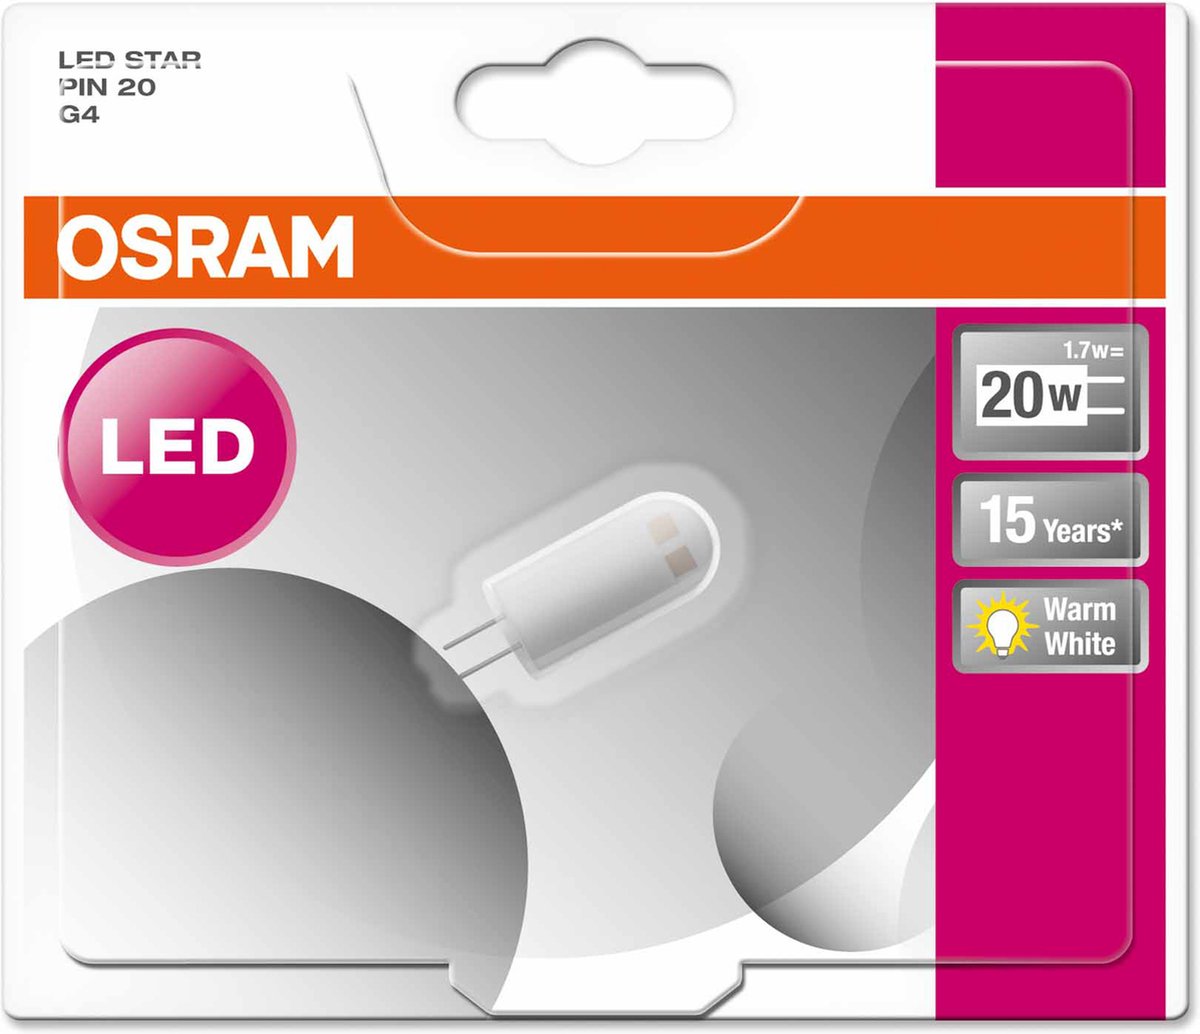 Osram LED STAR PIN 12V LED-lamp 1,7 W G4 A++ bol.com